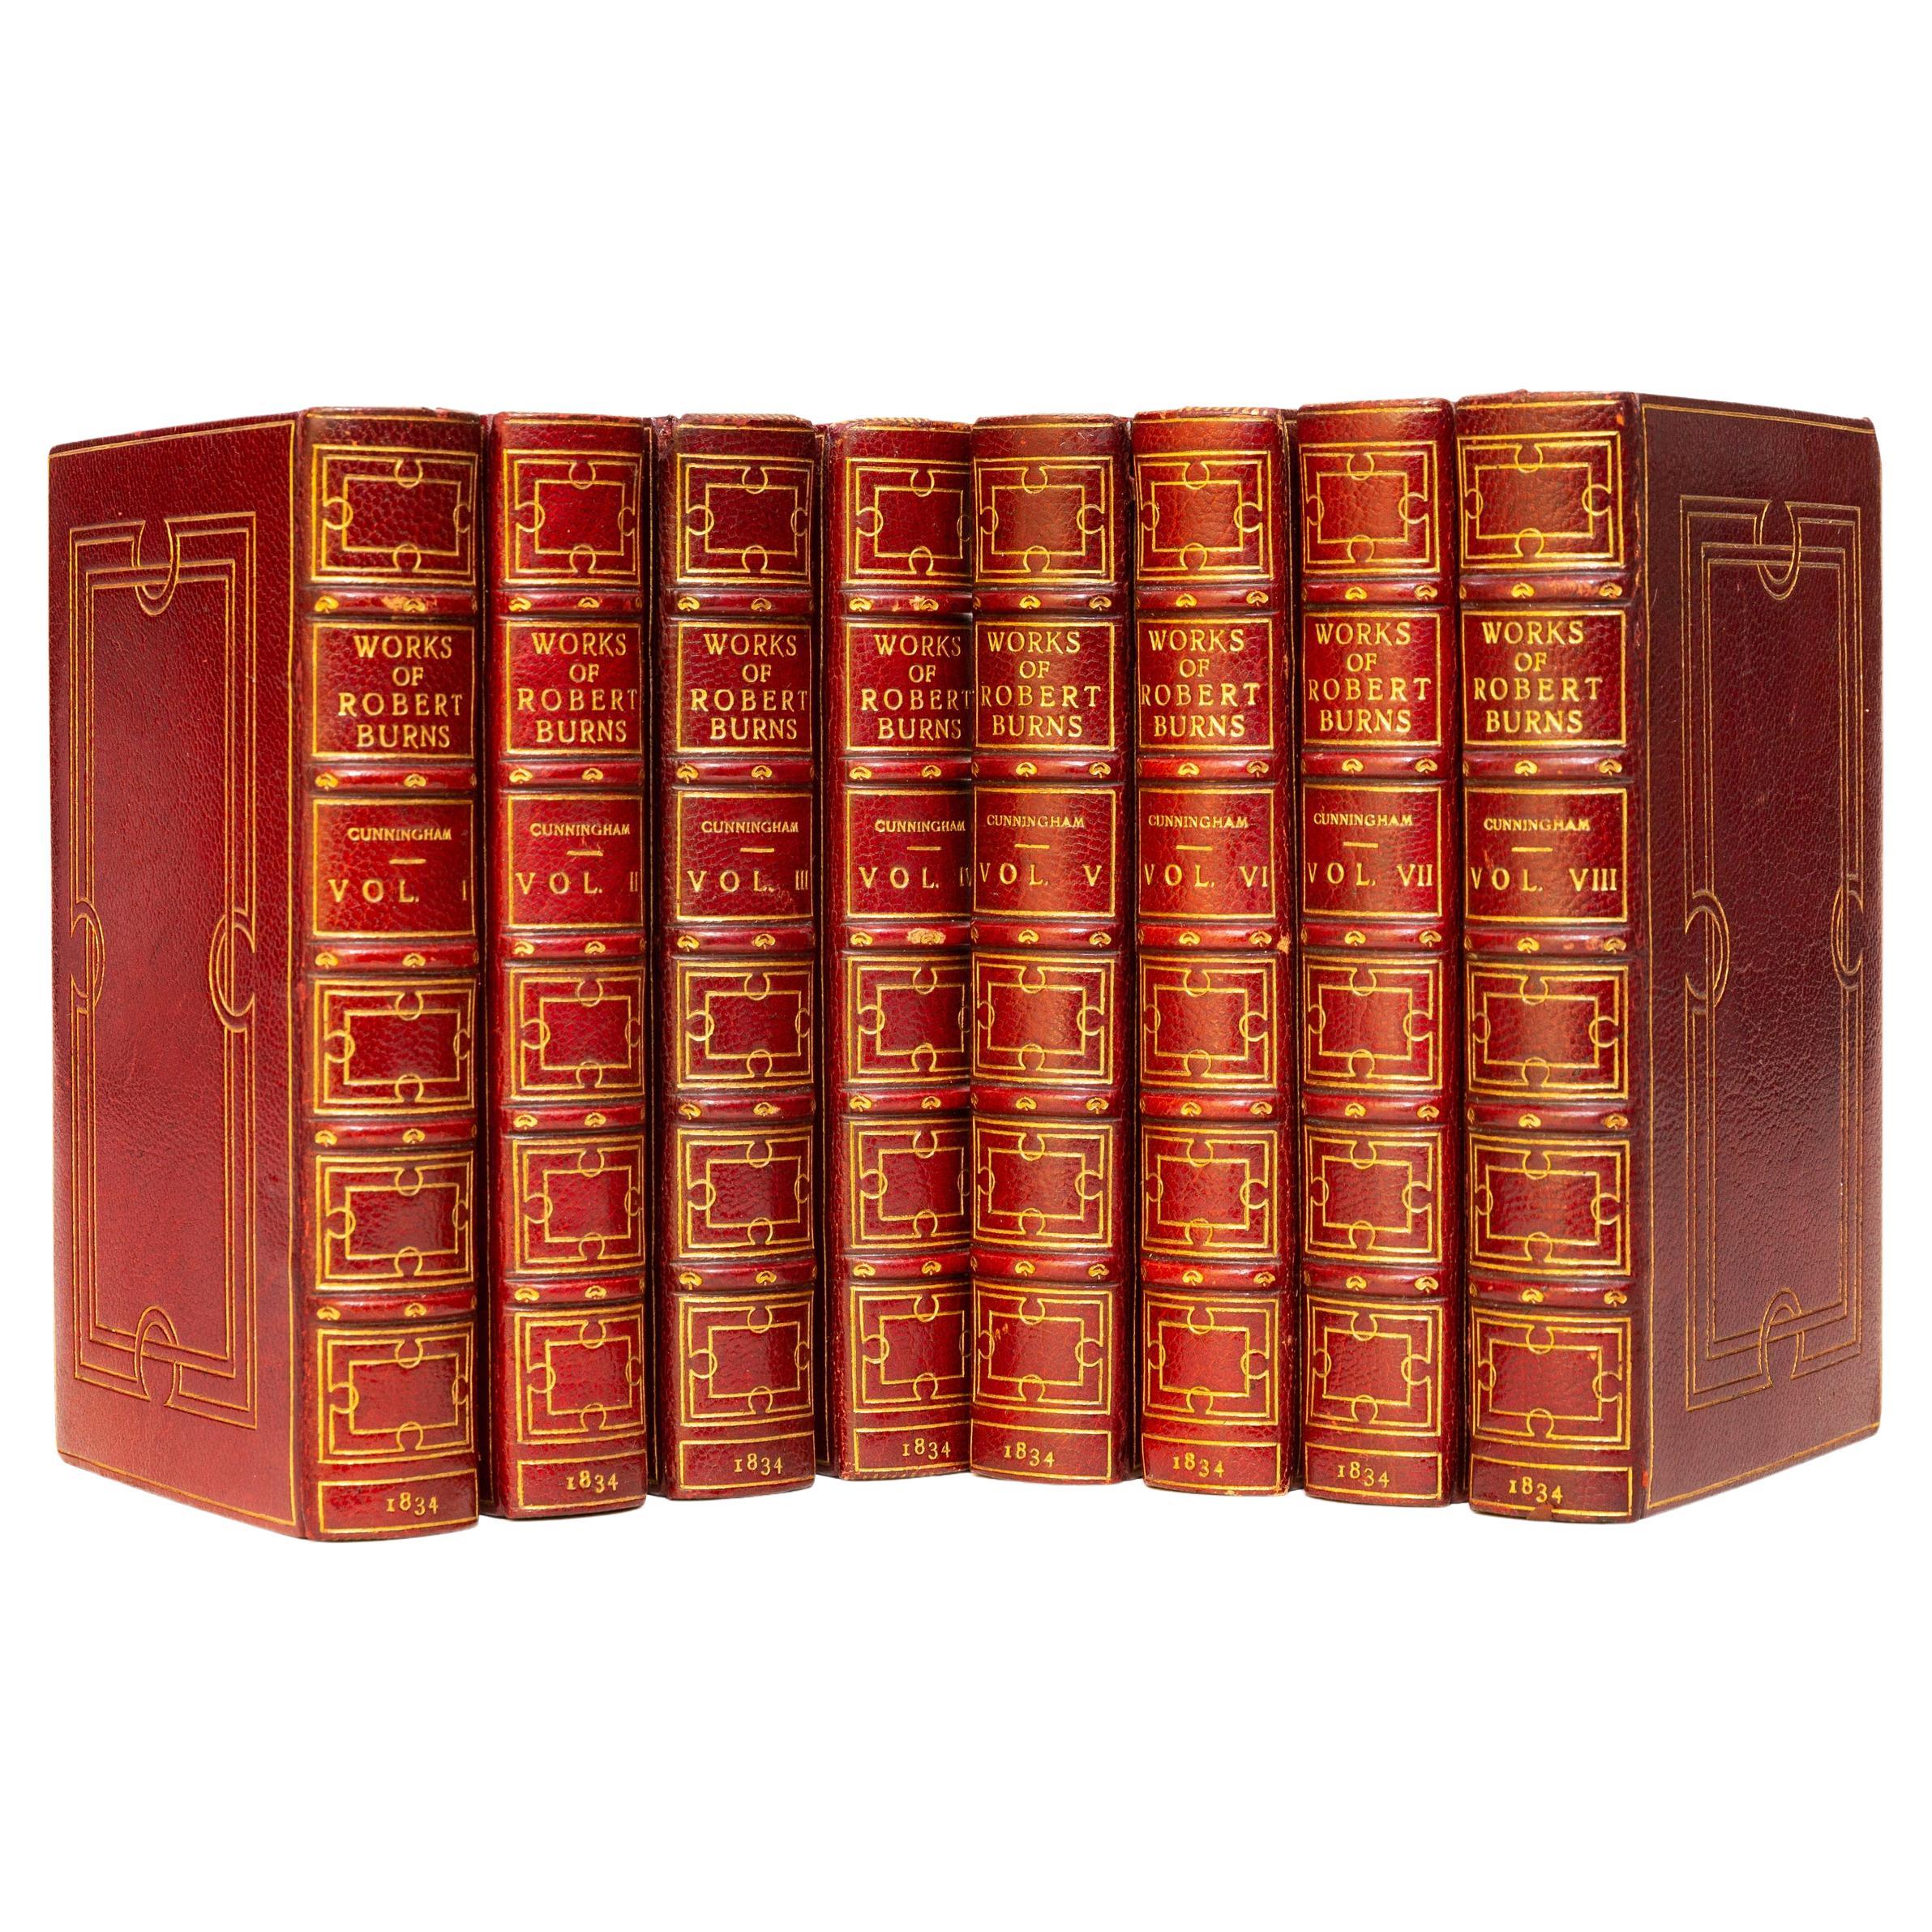 8 Volumes. Robert Burns, The Works of Robert Burns. 